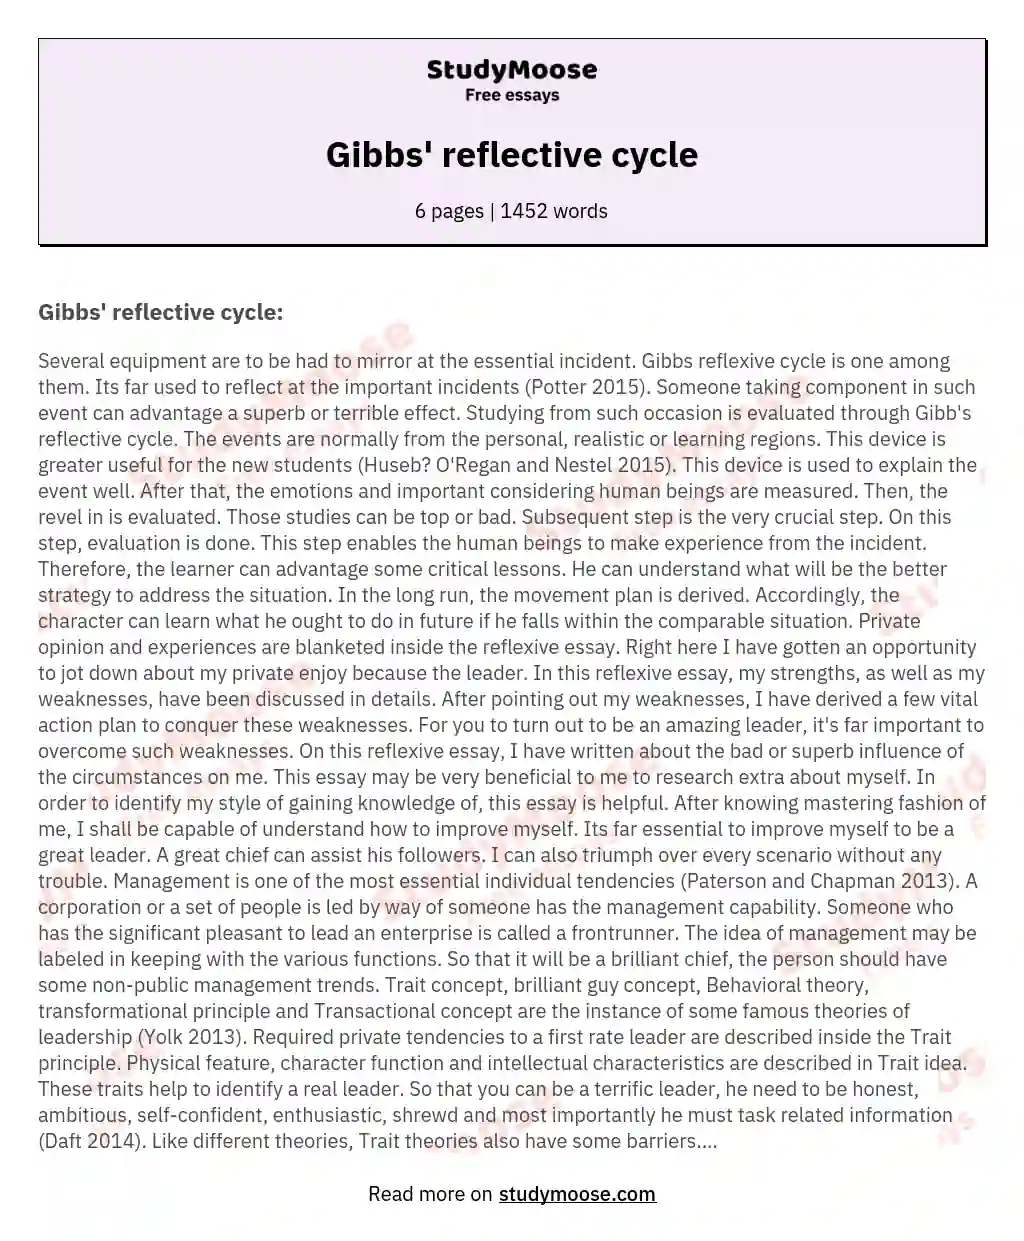 Gibbs' reflective cycle